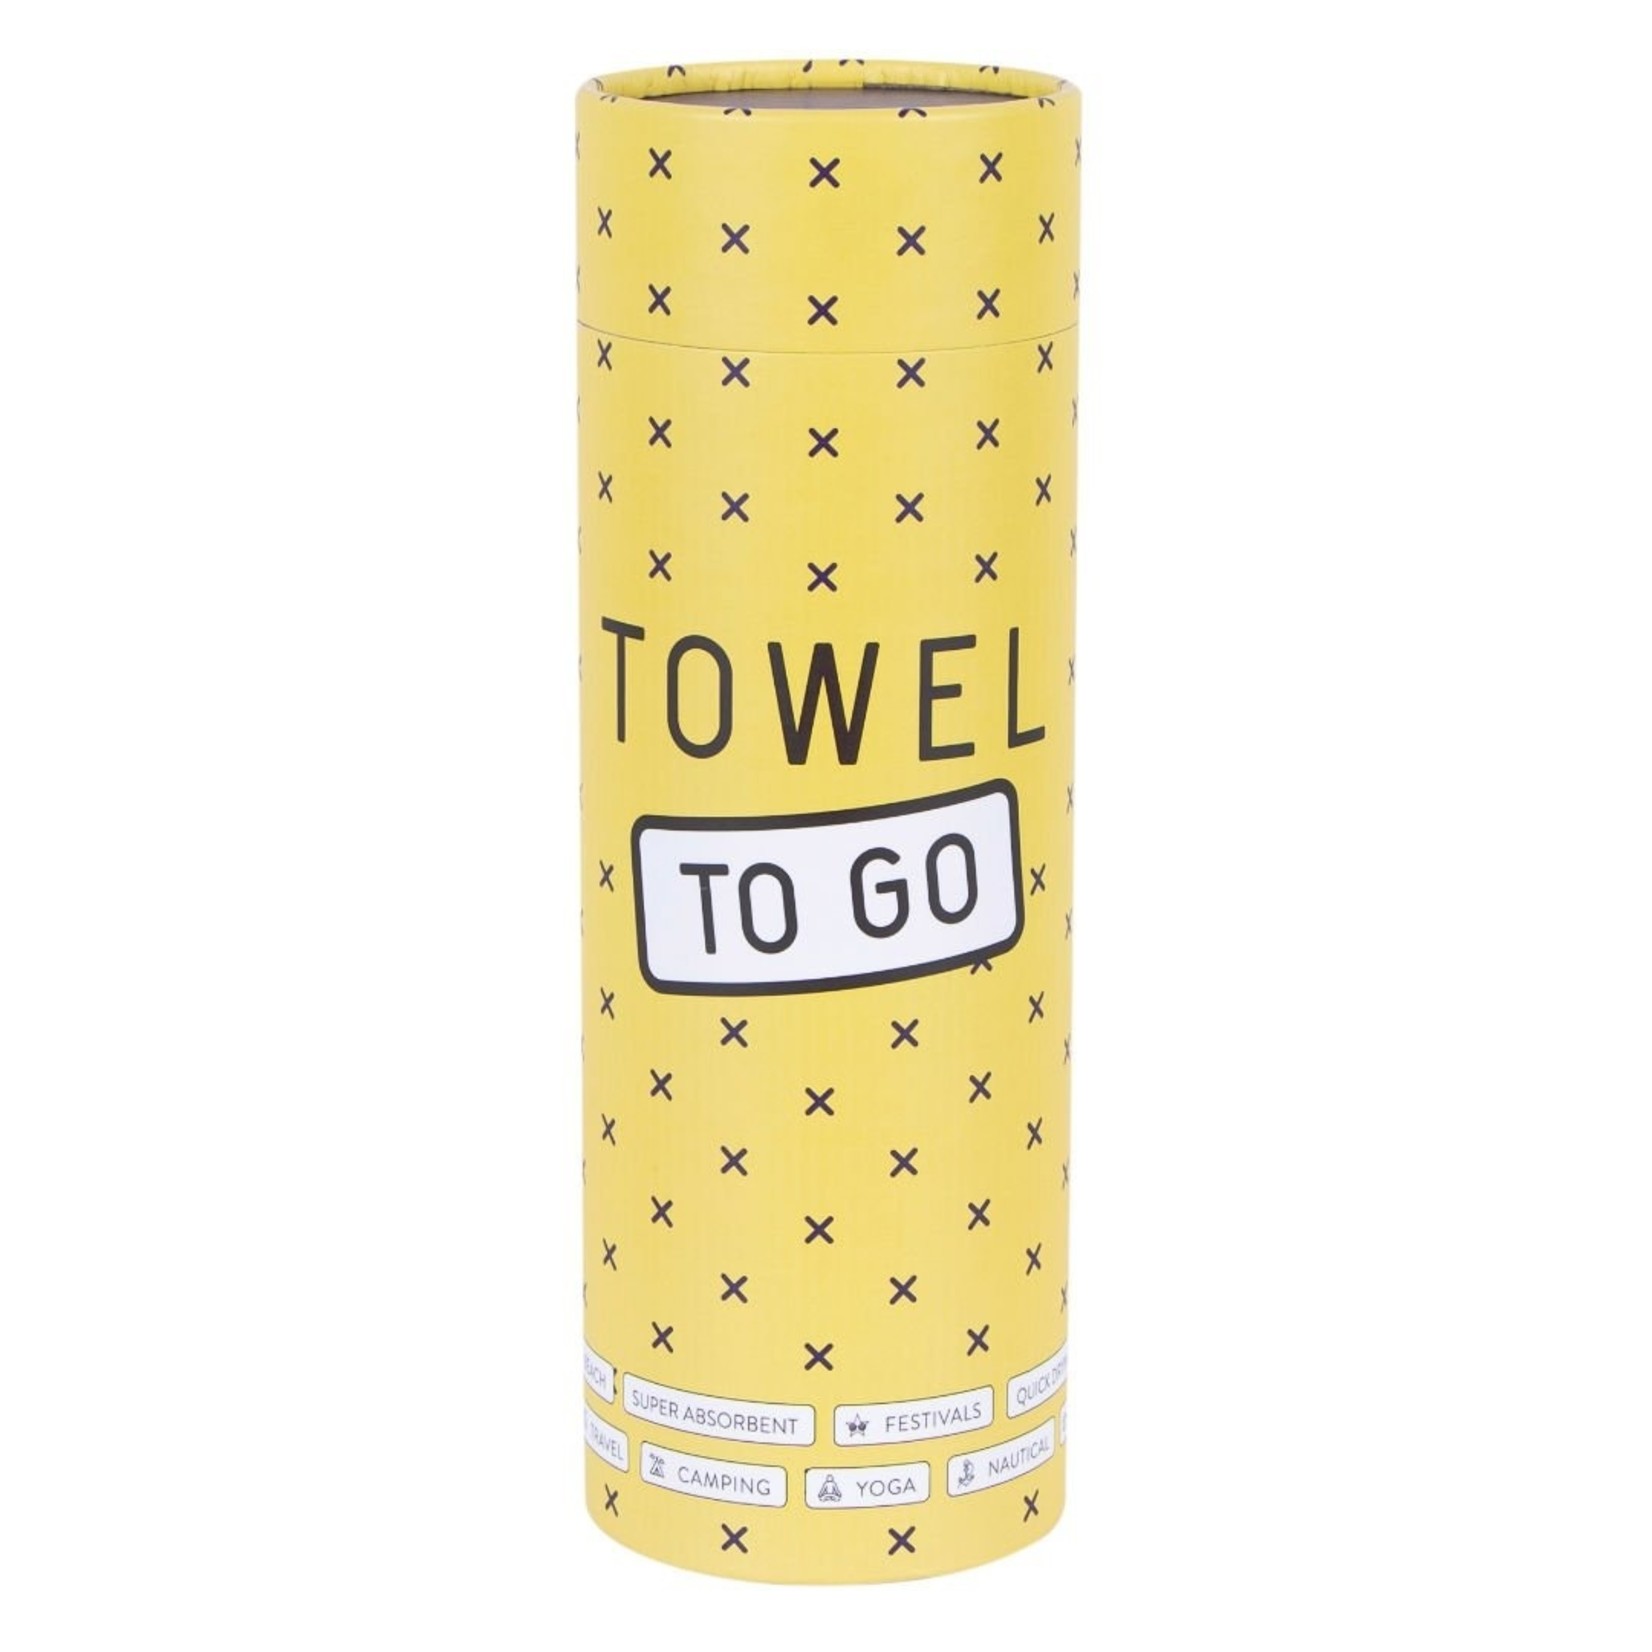 TOWEL TO GO Towel to go Malibu beige 100%BW oeko tex